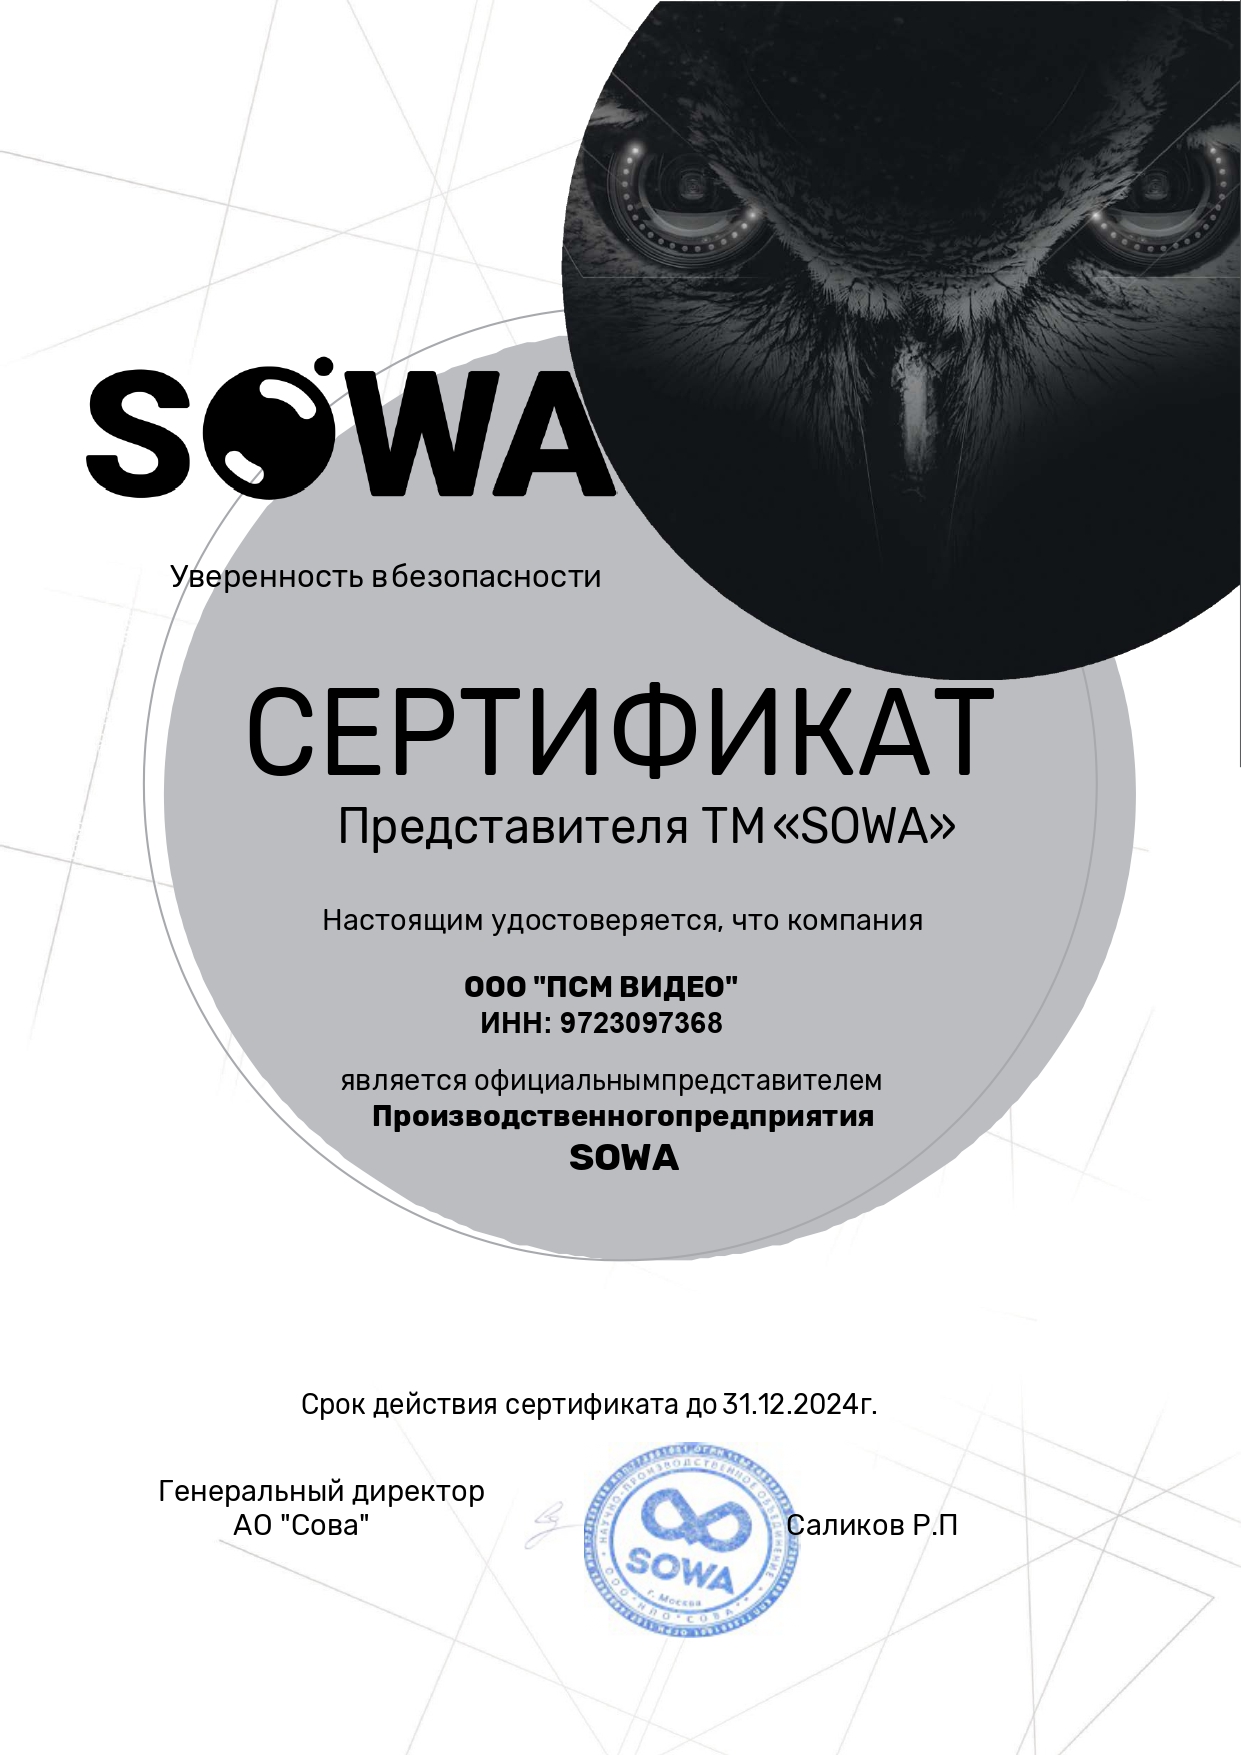 Сертификат Sowa